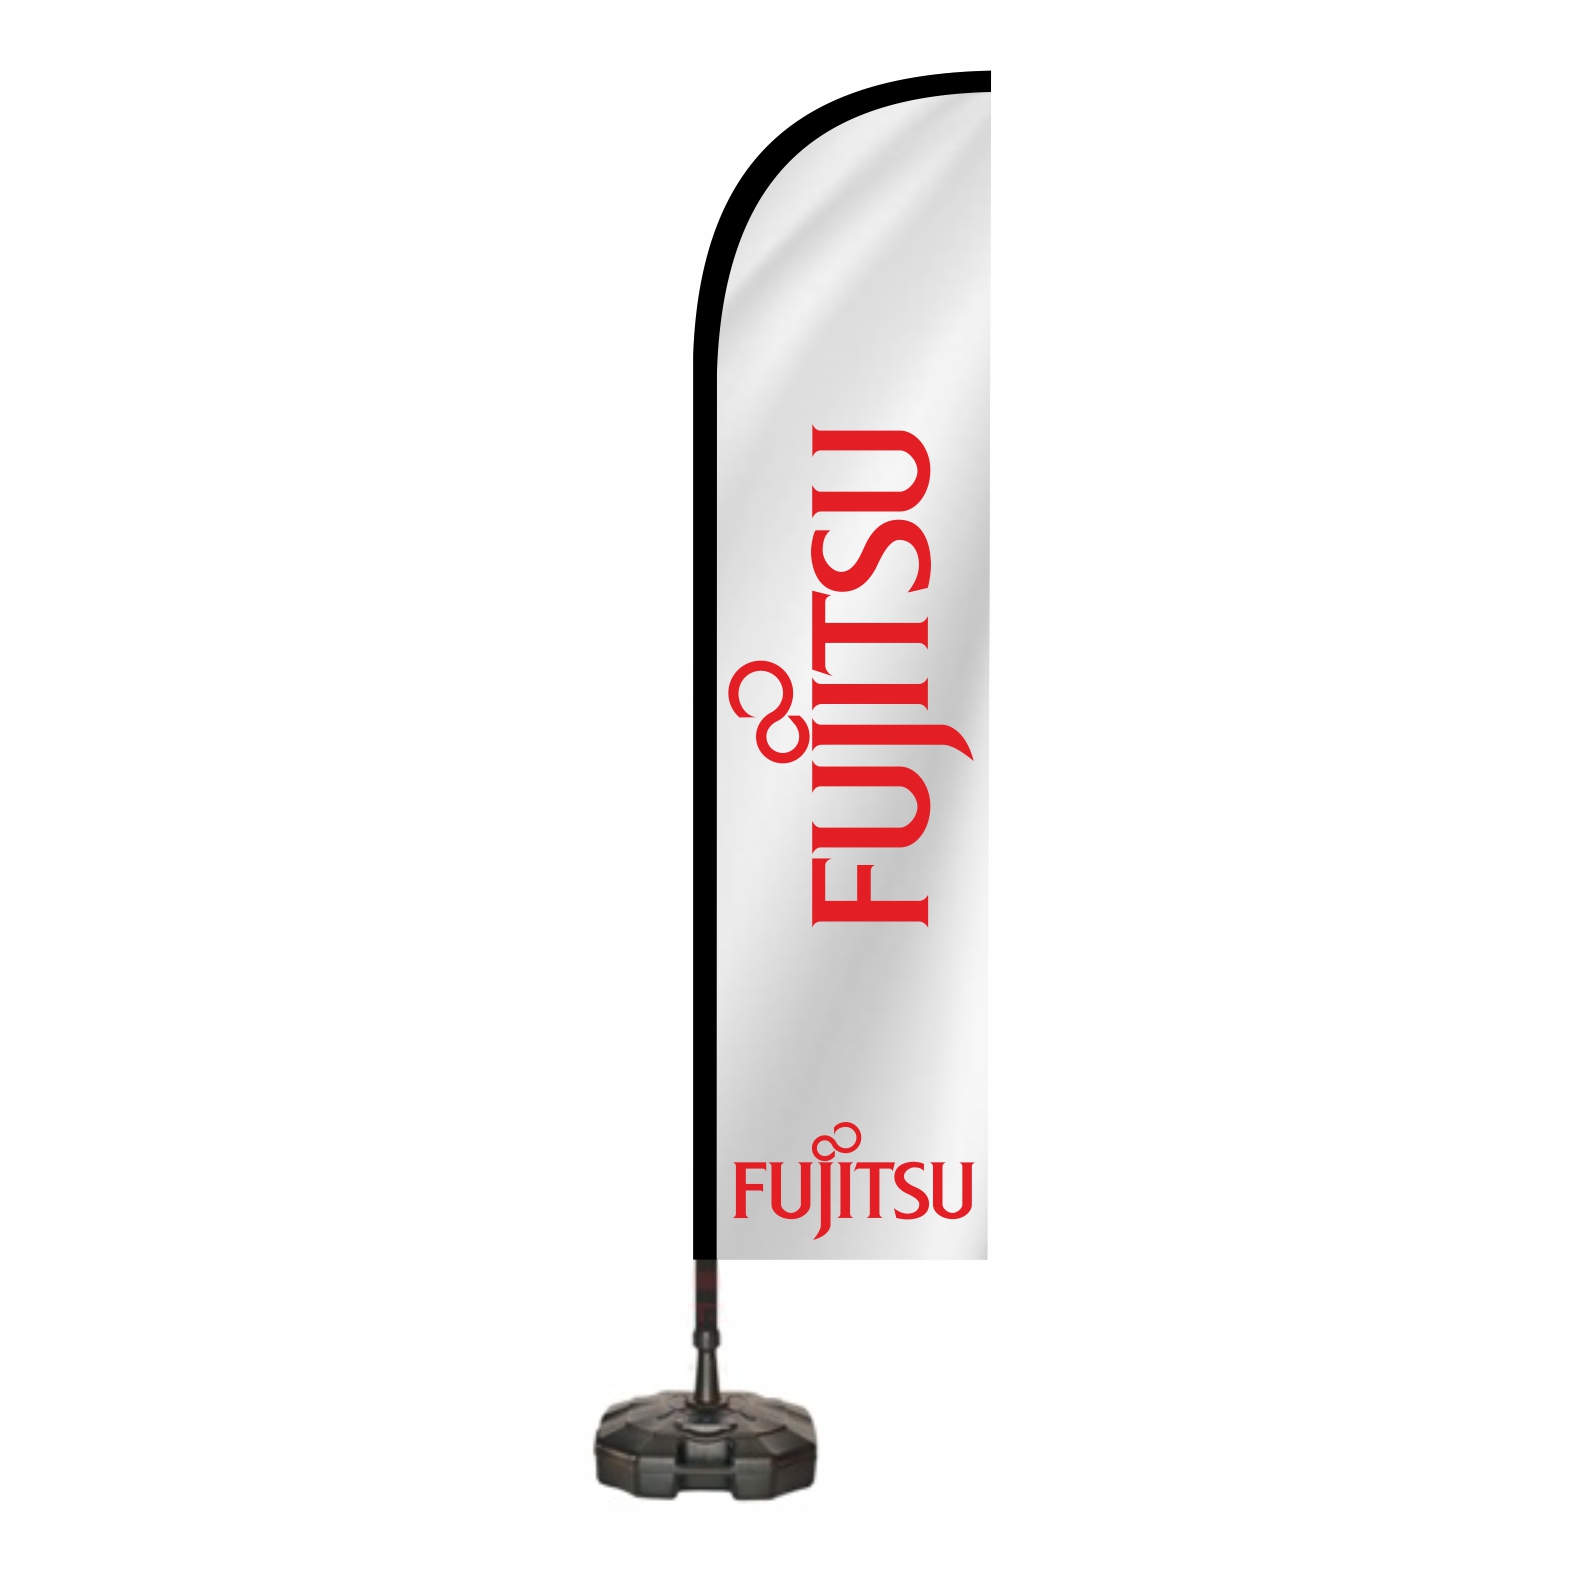 Fujitsu Yelken Bayrağı